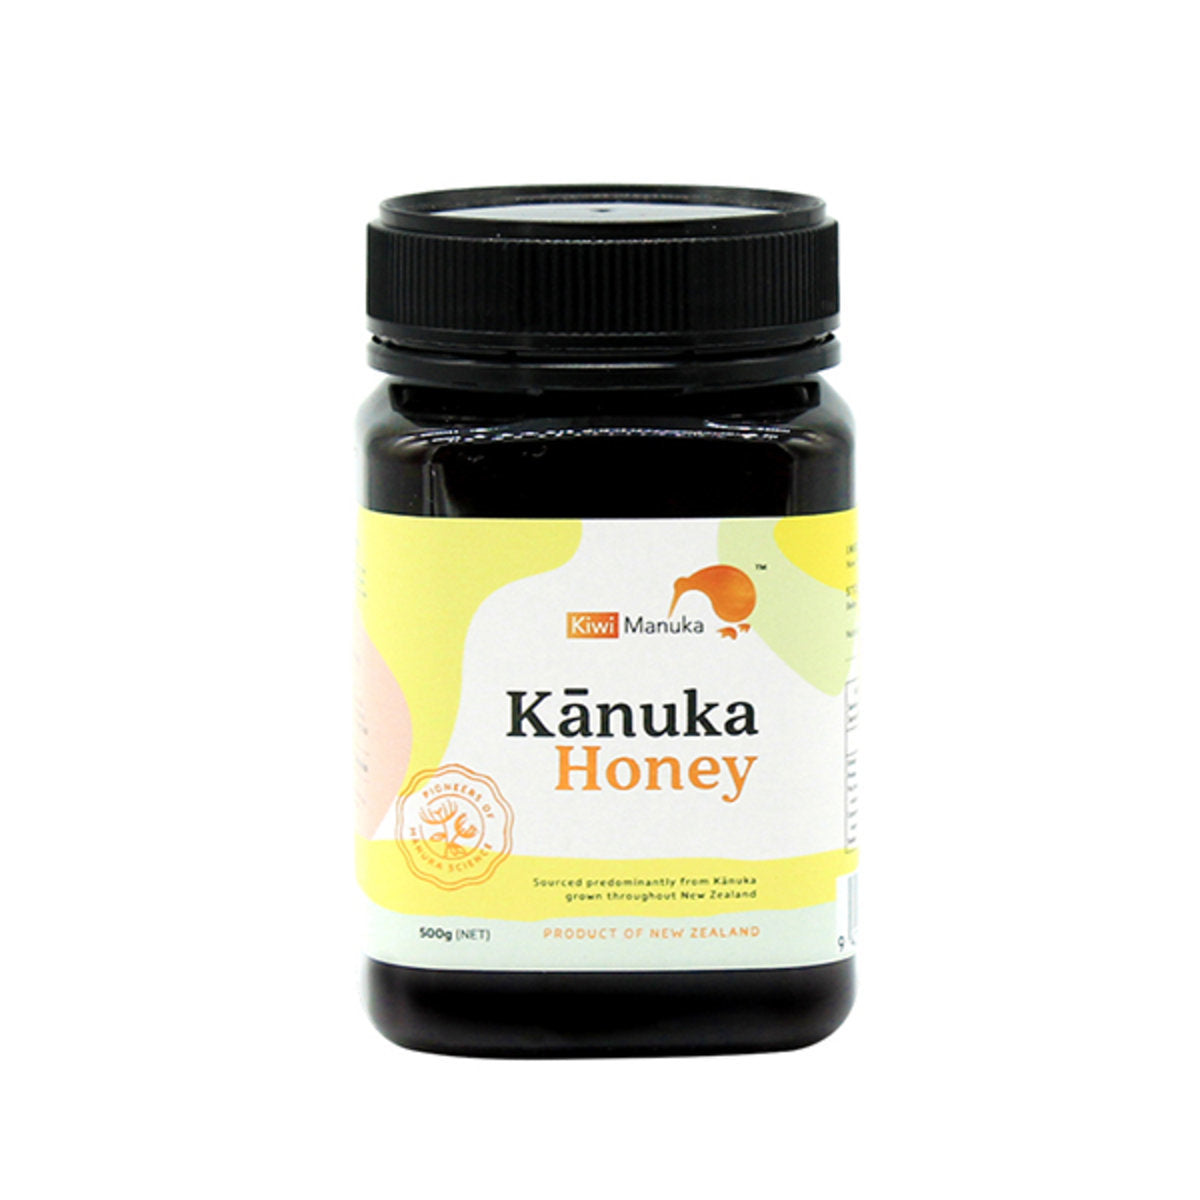 Kiwi Manuka 卡蘆卡蜂蜜 (100g/500g)